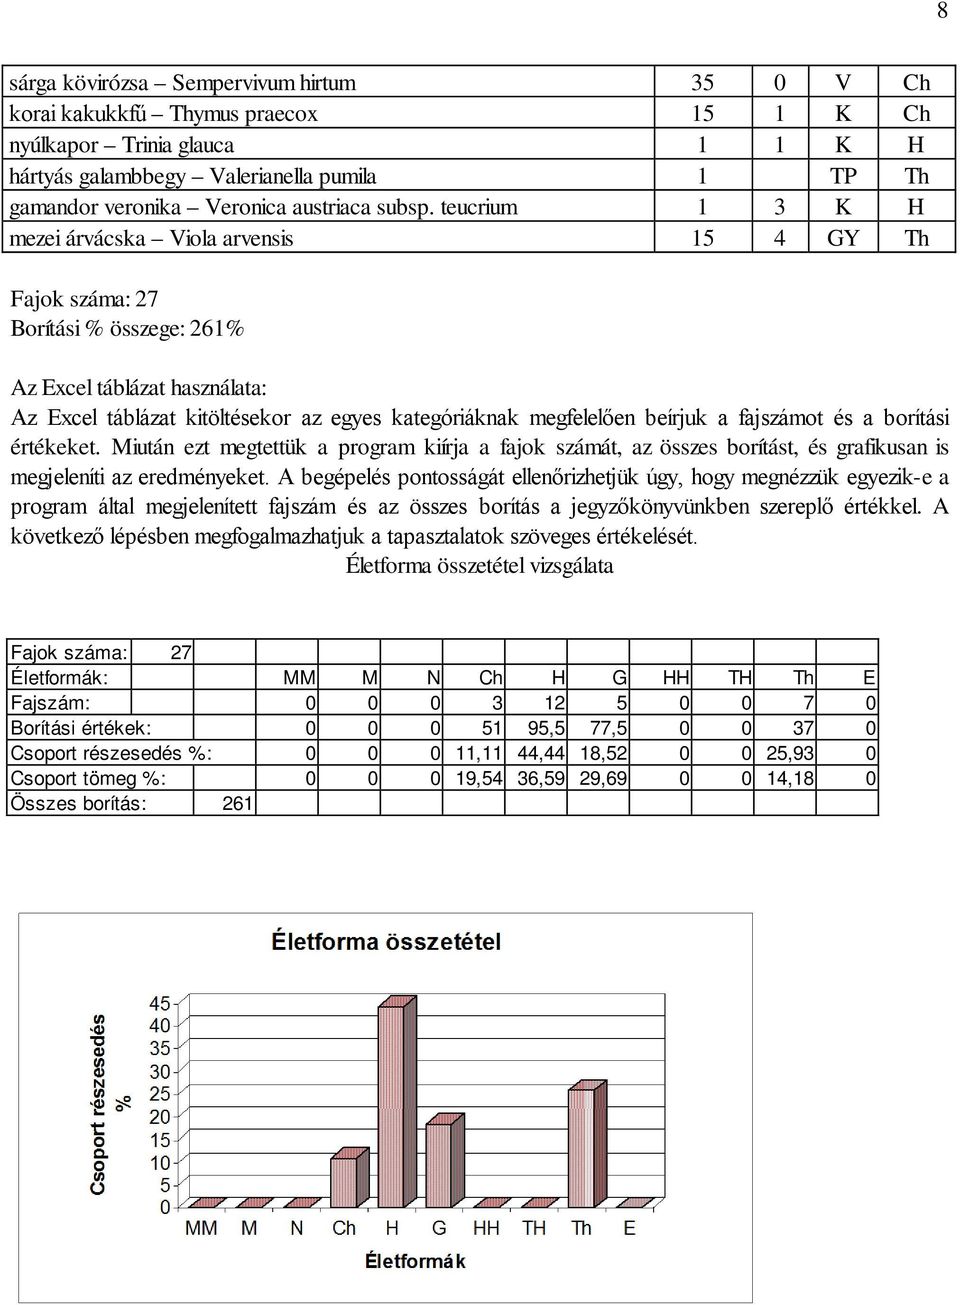 teucrium 1 3 K H mezei árvácska Viola arvensis 15 4 GY Th Fajok száma: 27 Borítási % összege: 261% Az Excel táblázat használata: Az Excel táblázat kitöltésekor az egyes kategóriáknak megfelelően